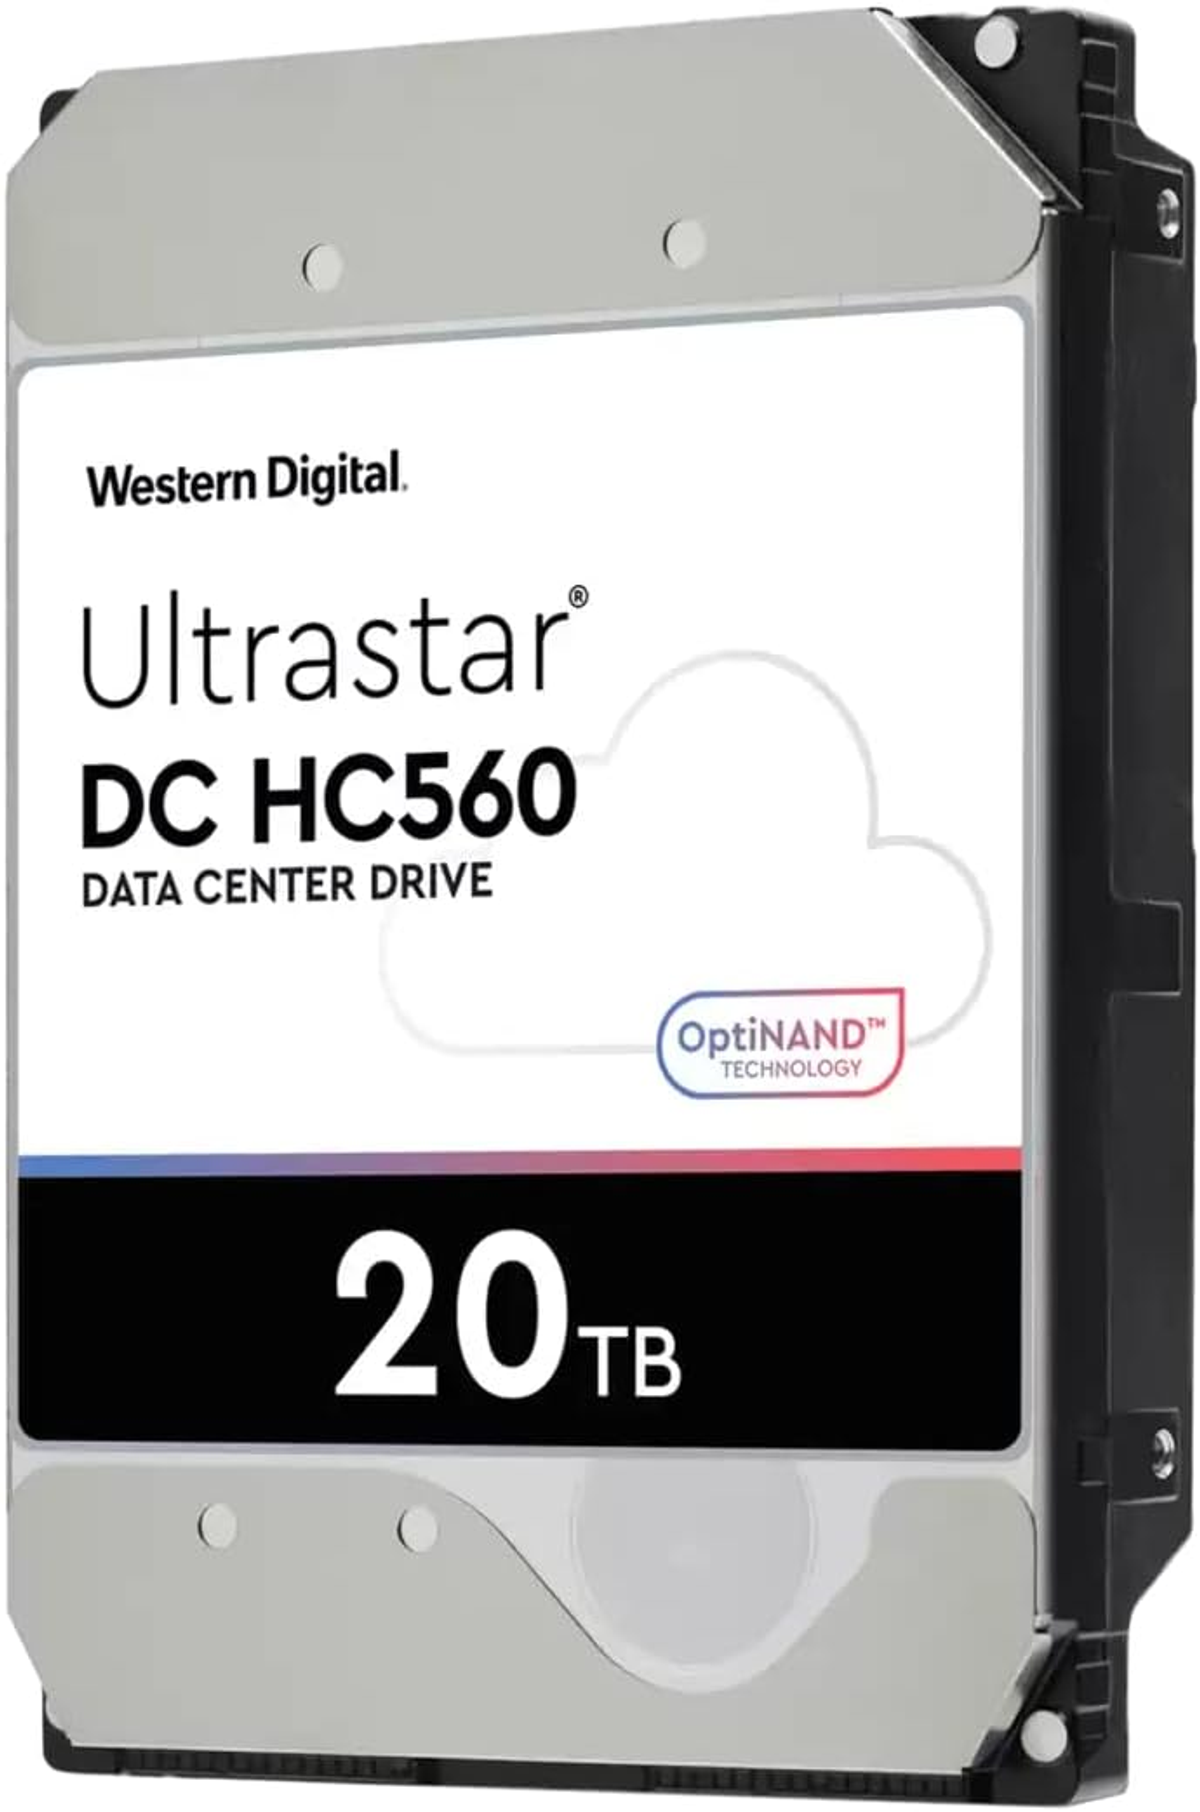 Ultrastar 20TB HC560 WESTERN DH 7200RPM 512MB Ent., 20 DIGITAL intern WD Zoll, HDD, 3,5 TB,